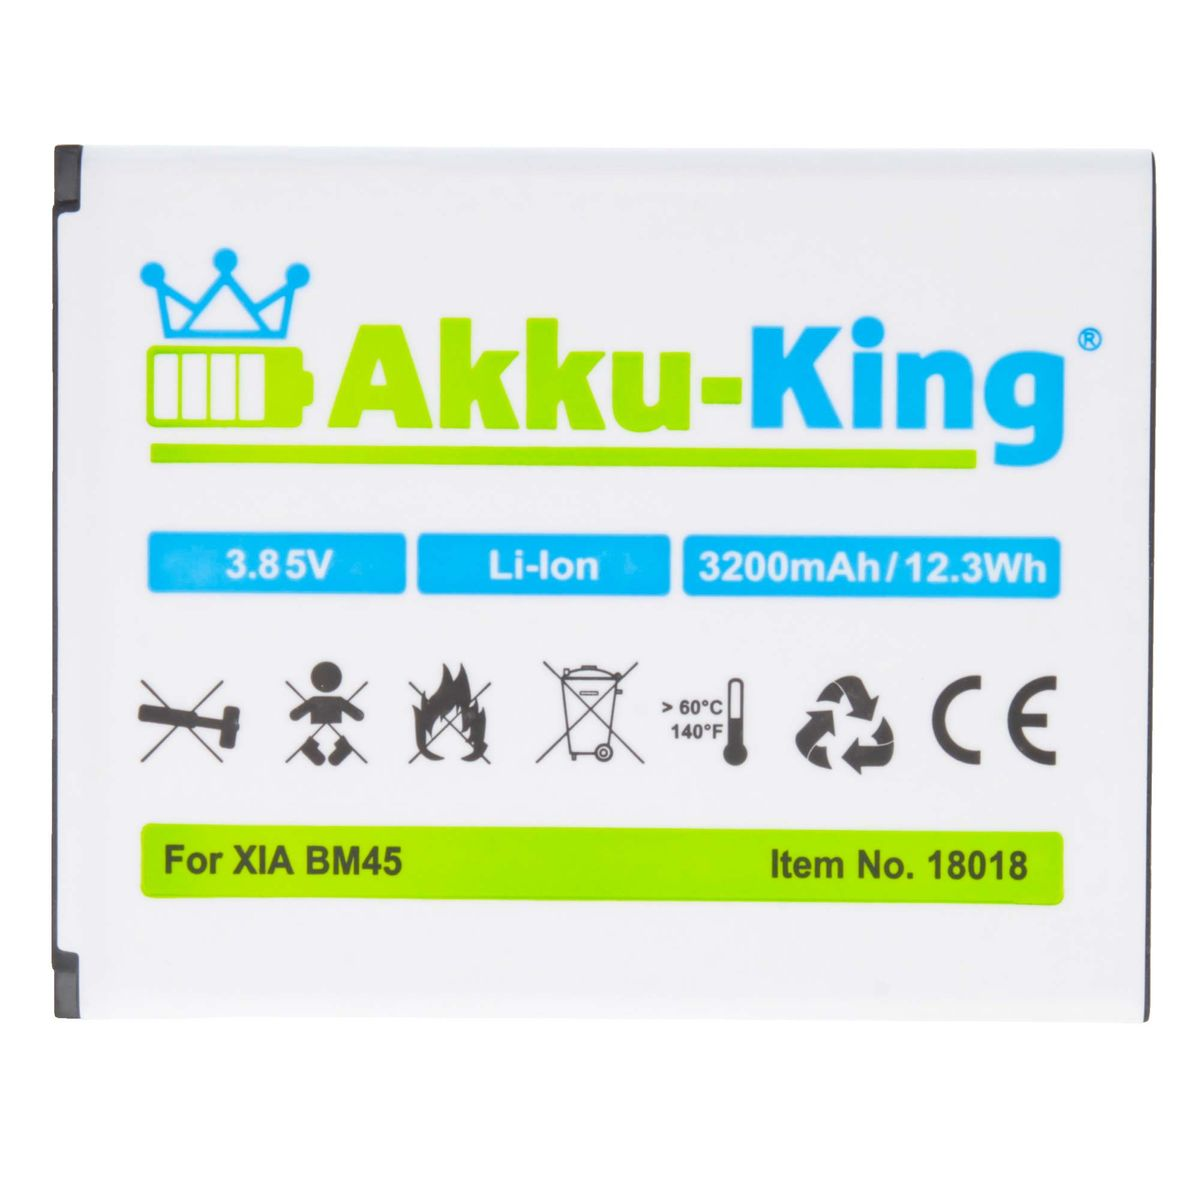 3200mAh kompatibel Xiaomi Volt, Akku AKKU-KING mit Li-Ion BM45 Handy-Akku, 3.85